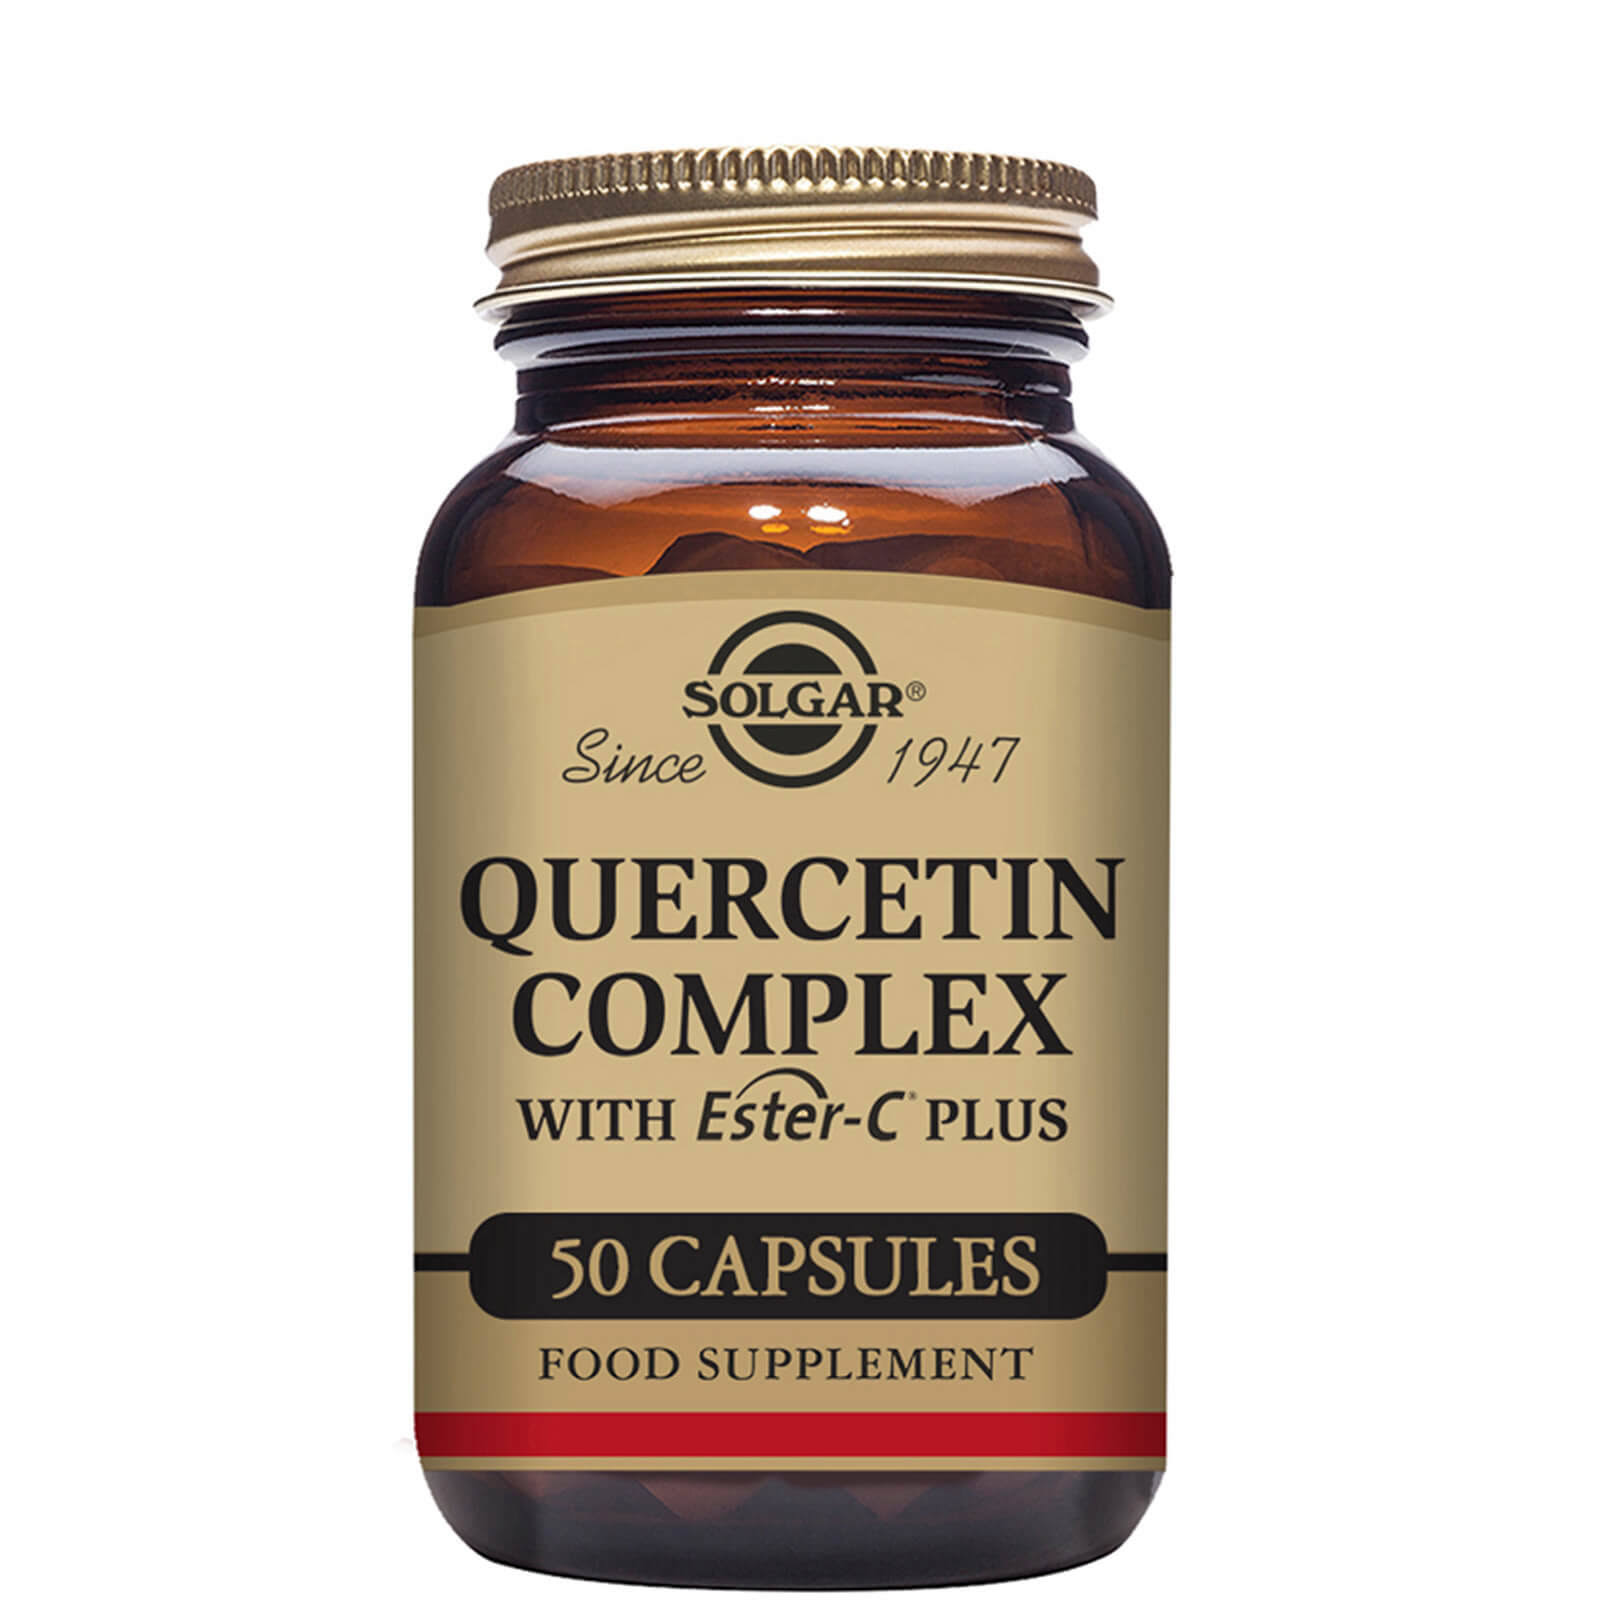 Solgar Quercetin Complex Vegetable - 50 capsules